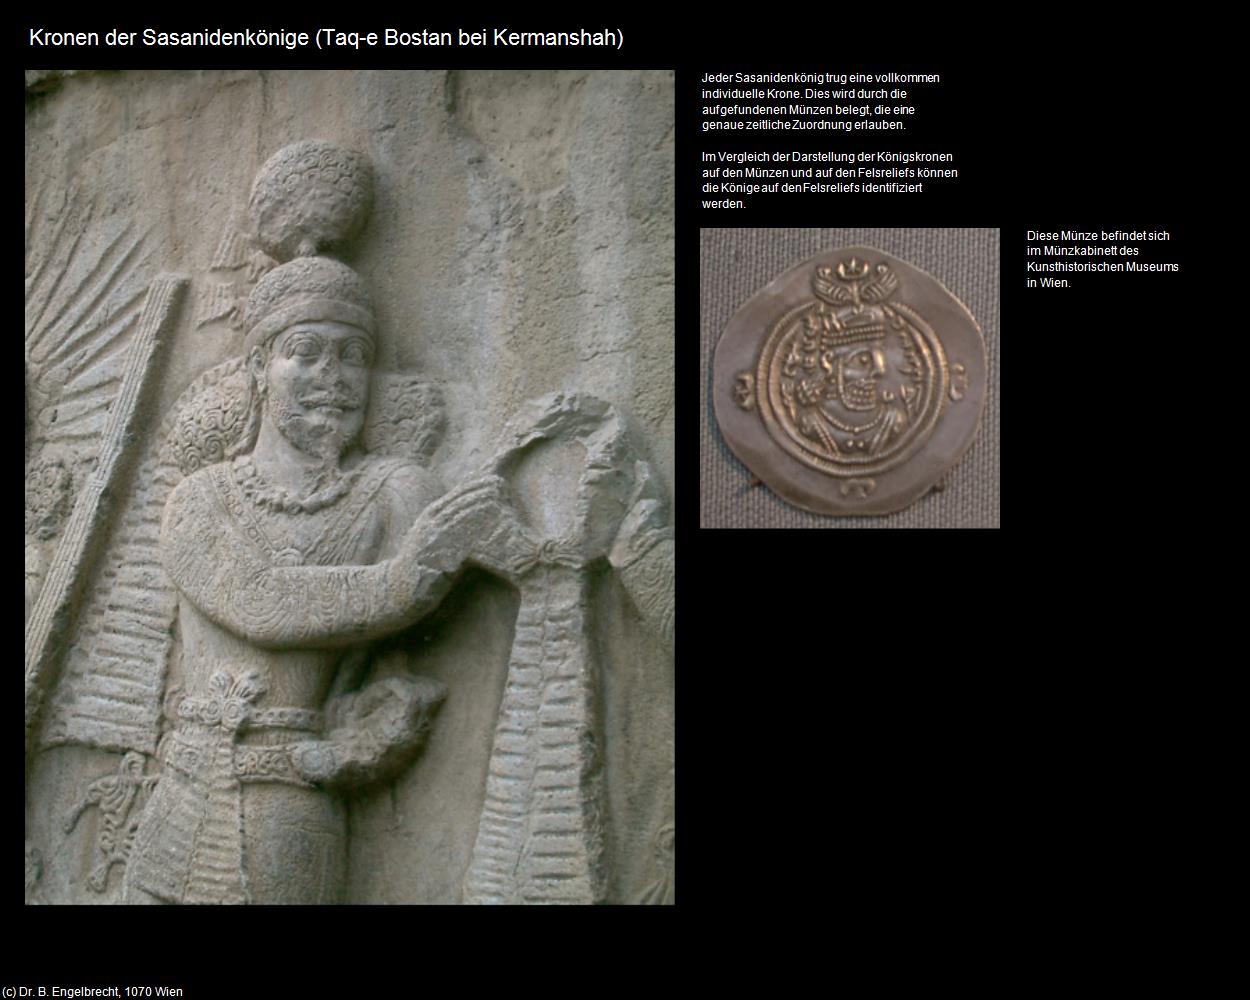 Kronen der Sasaniden-Könige (Taq-e Bostan bei Kermanshah) in Iran